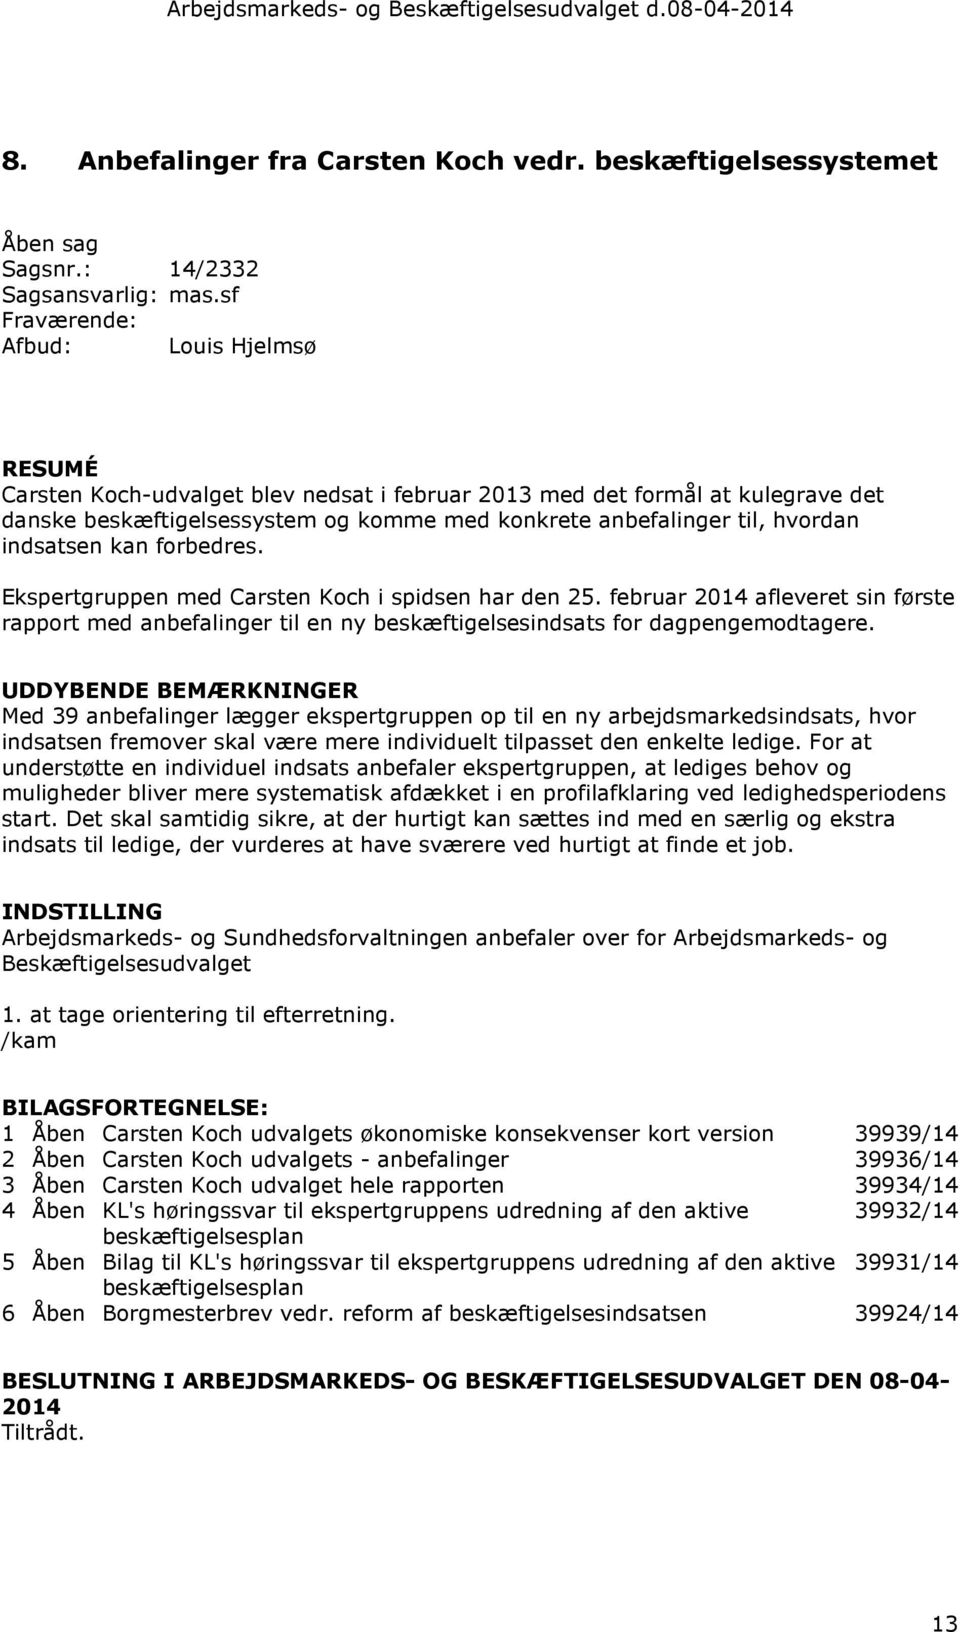 Ekspertgruppen med Carsten Koch i spidsen har den 25. februar 2014 afleveret sin første rapport med anbefalinger til en ny beskæftigelsesindsats for dagpengemodtagere.